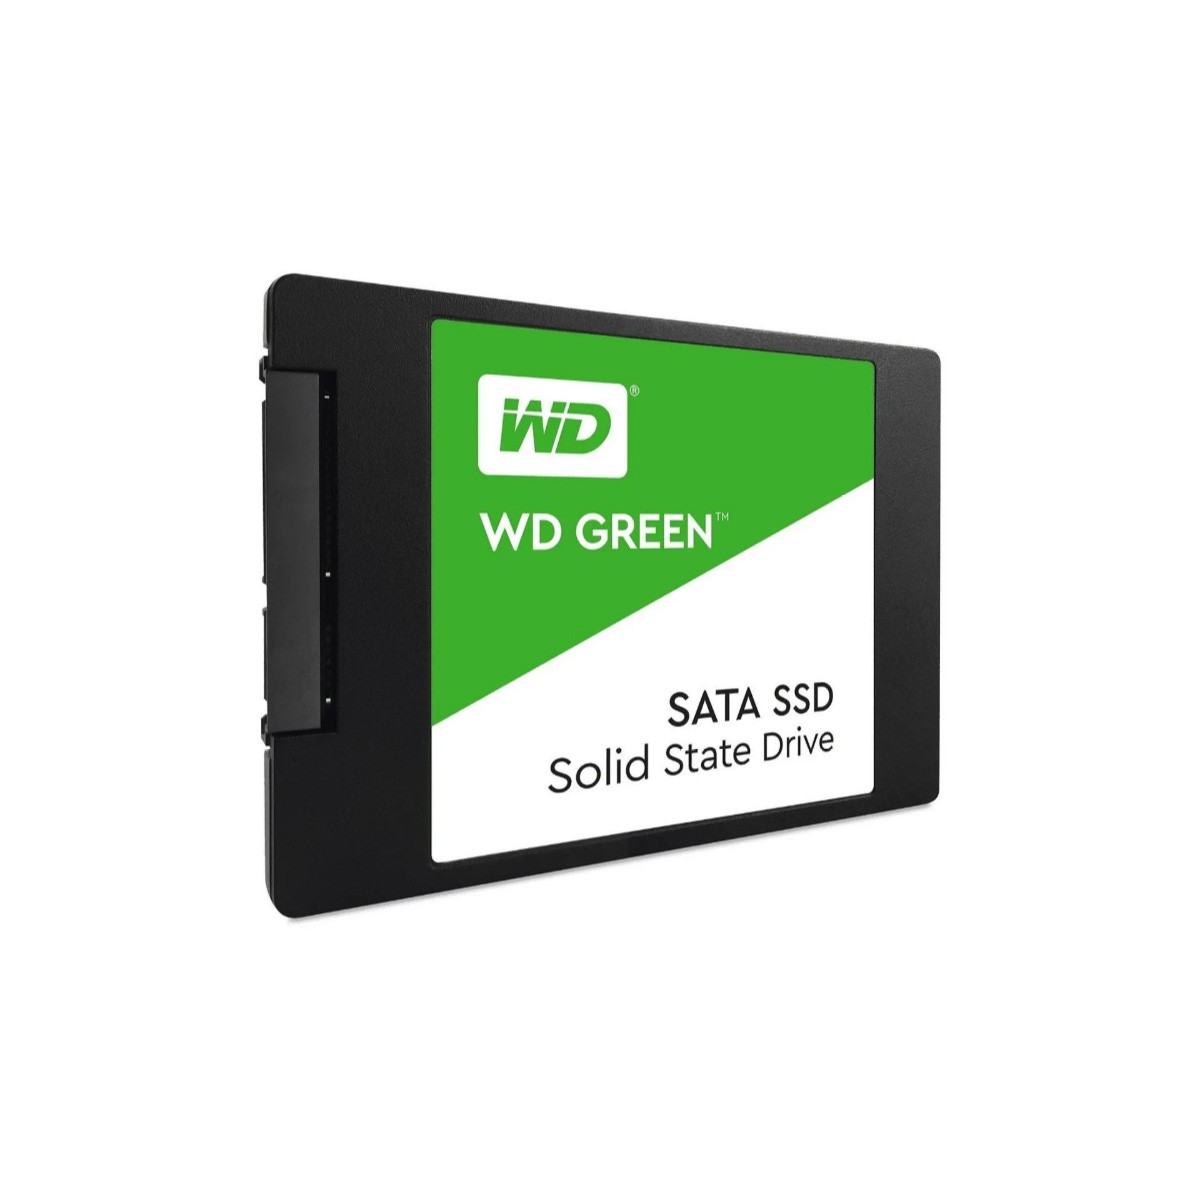 Disco sólido interno Western Digital WD Green WDS120G2G0A 120GB verde